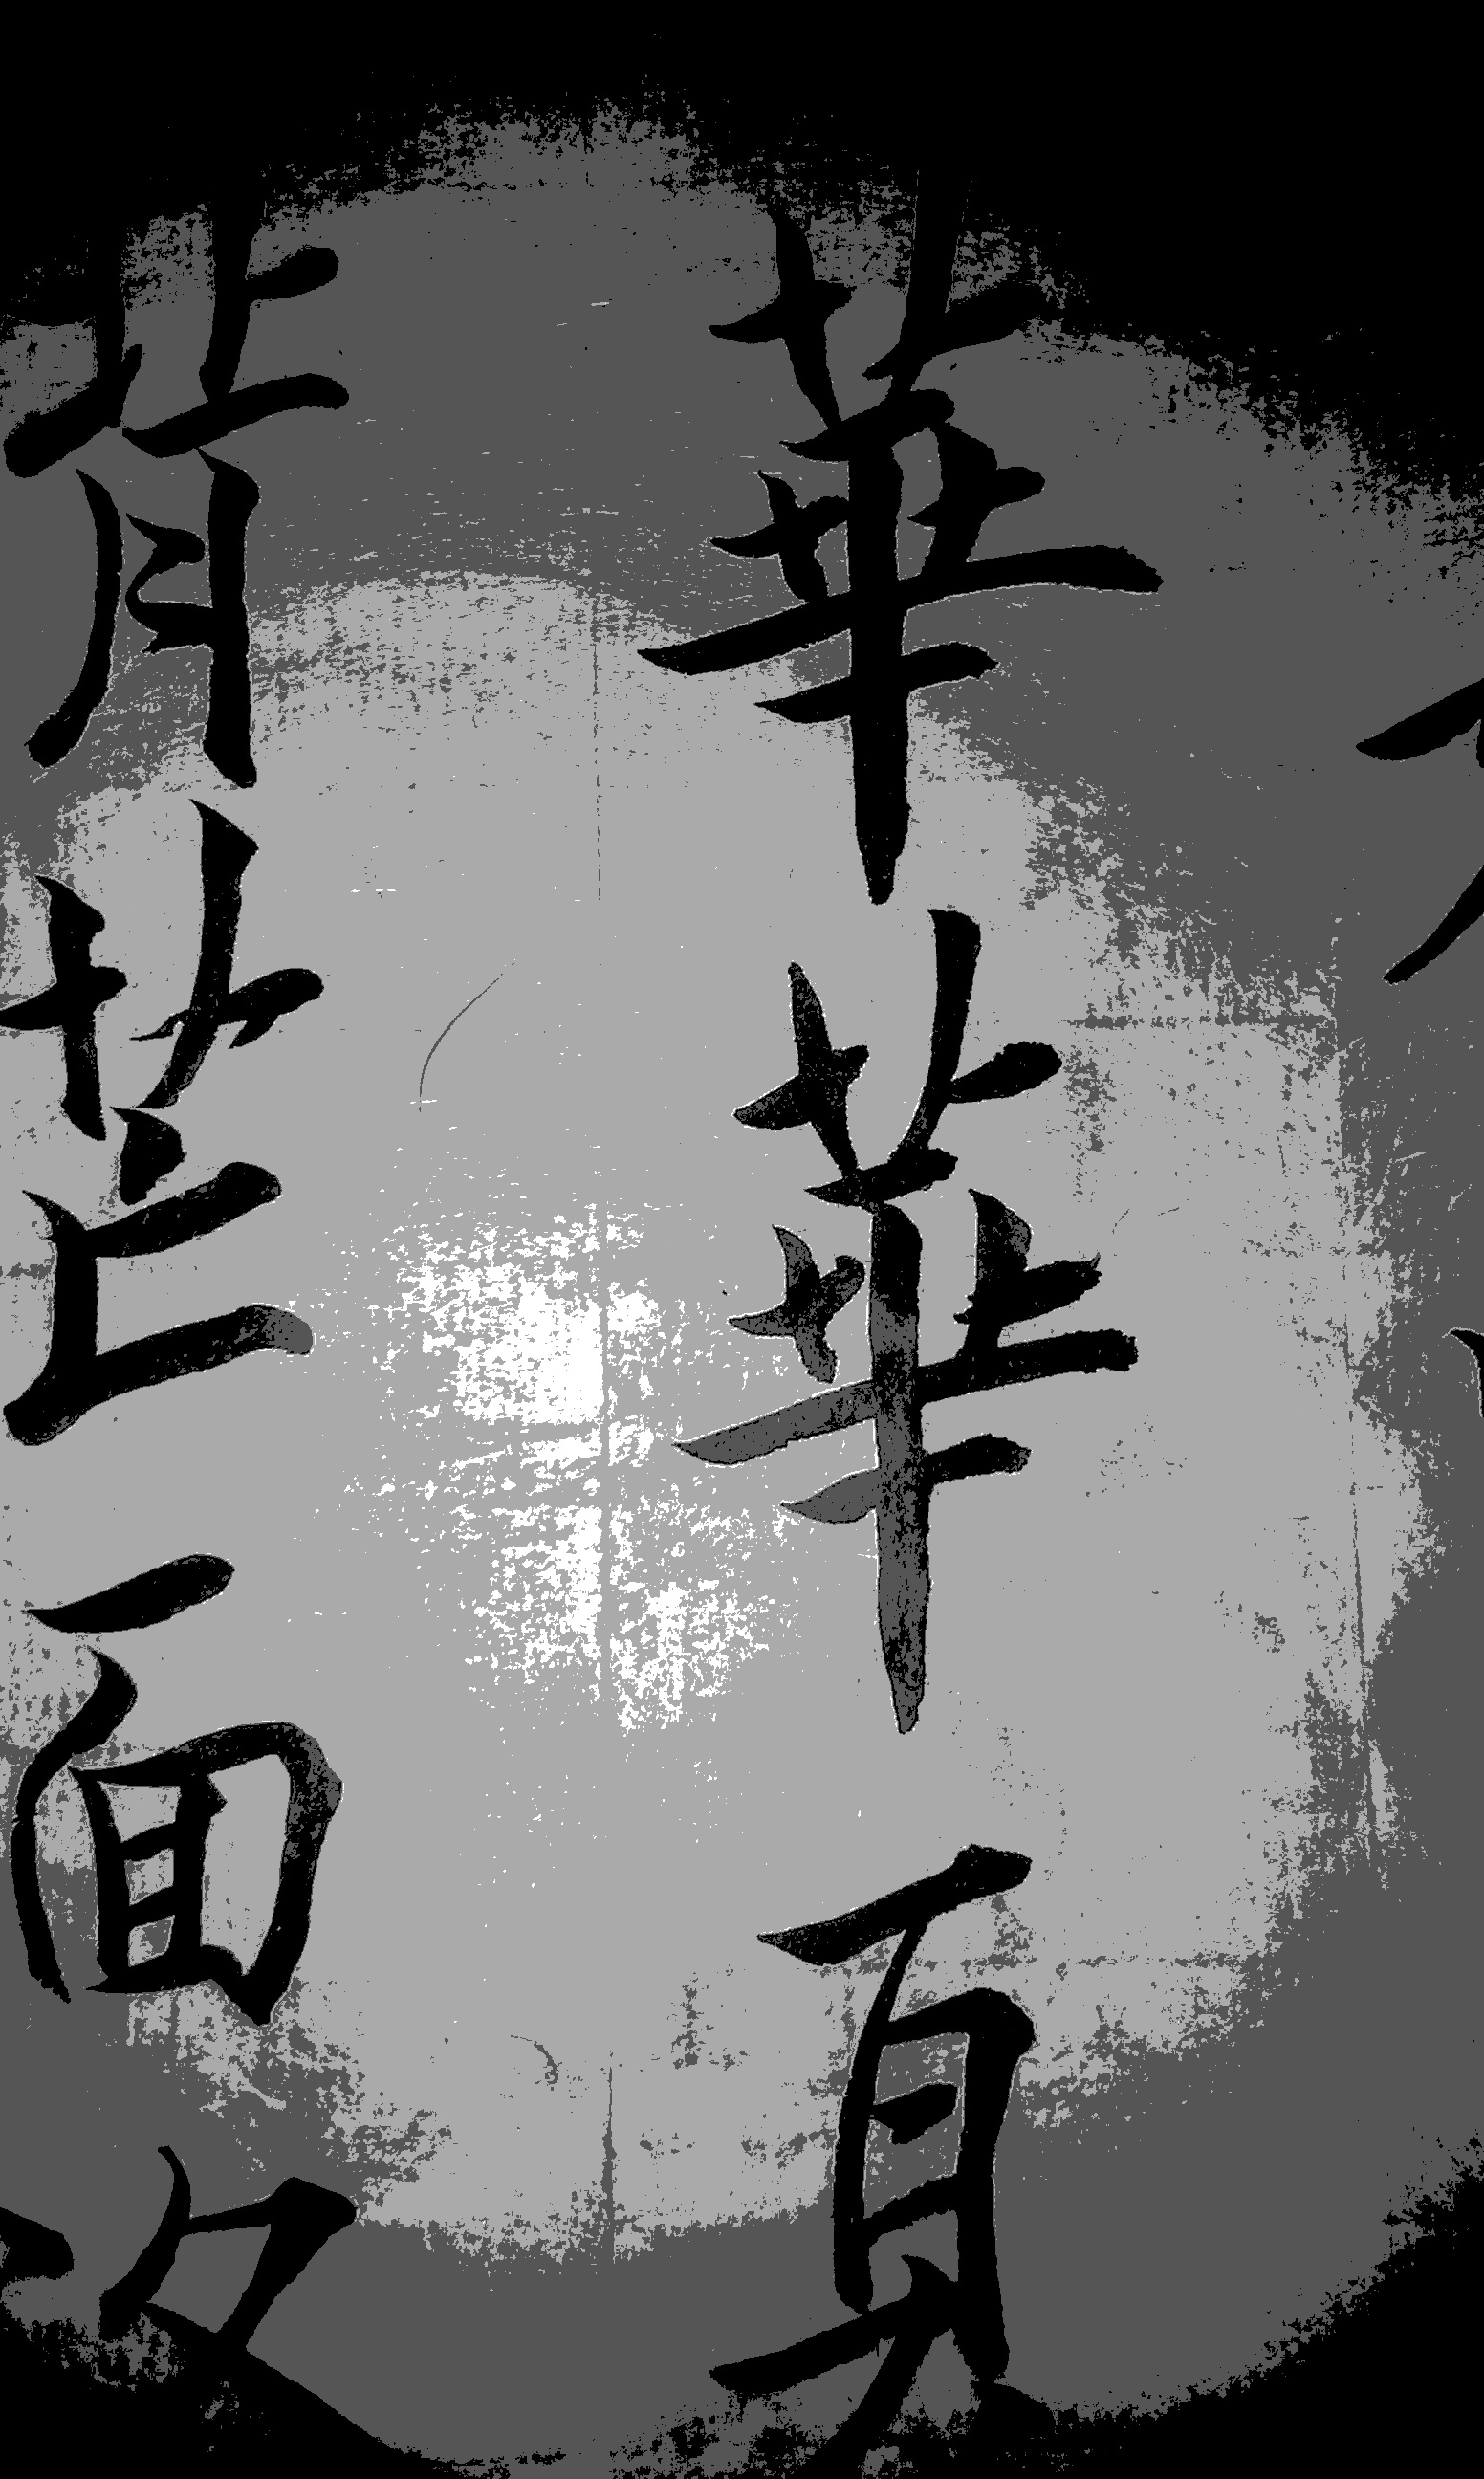 汉字创意 | 字体图形化设计实验-搜狐